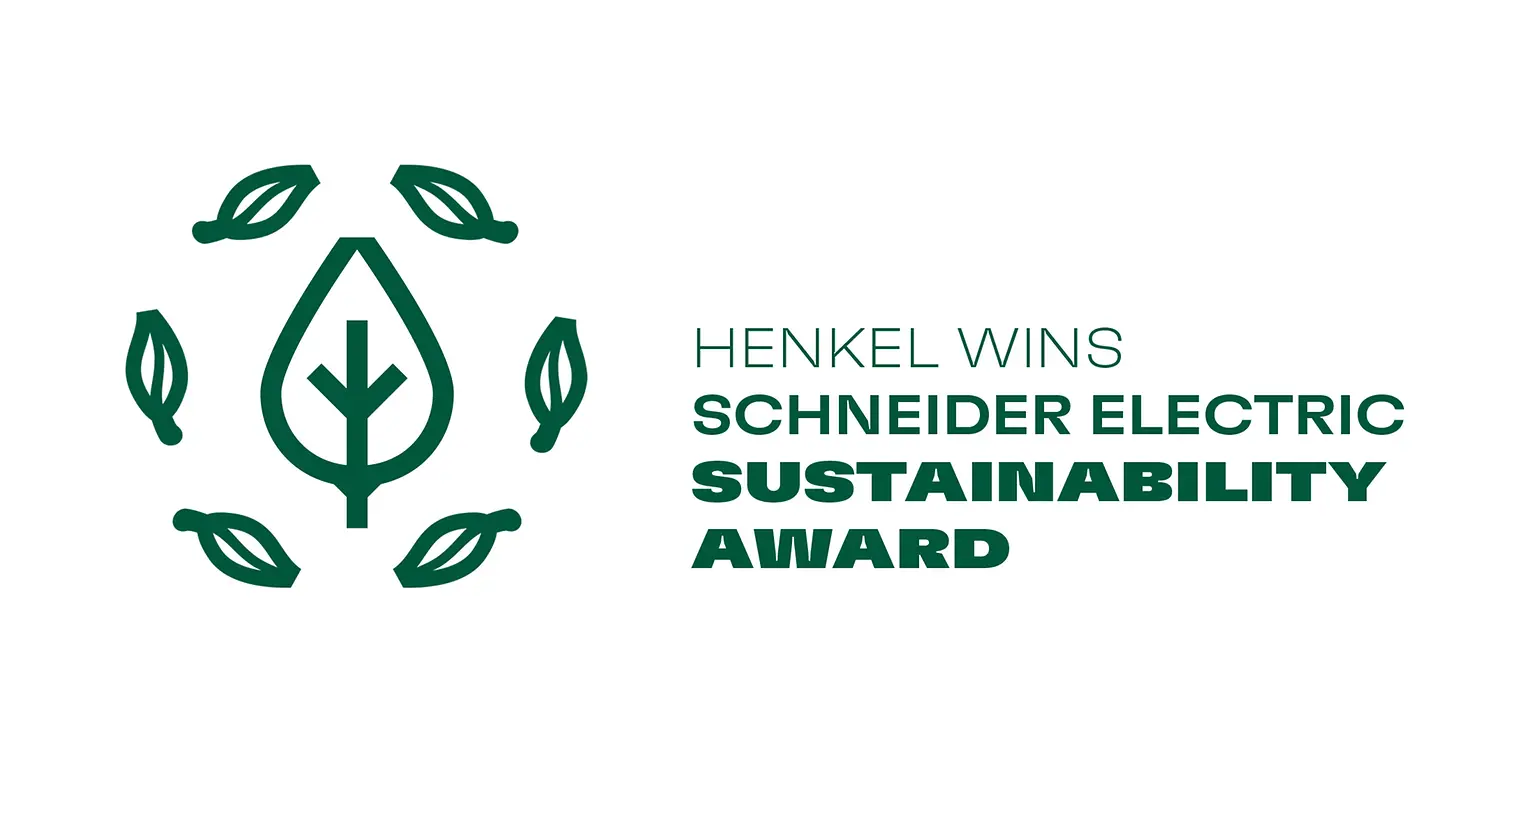 
A través de su historia, Henkel ha buscado lograr el cambio por el medioambiente a través de sus prácticas.